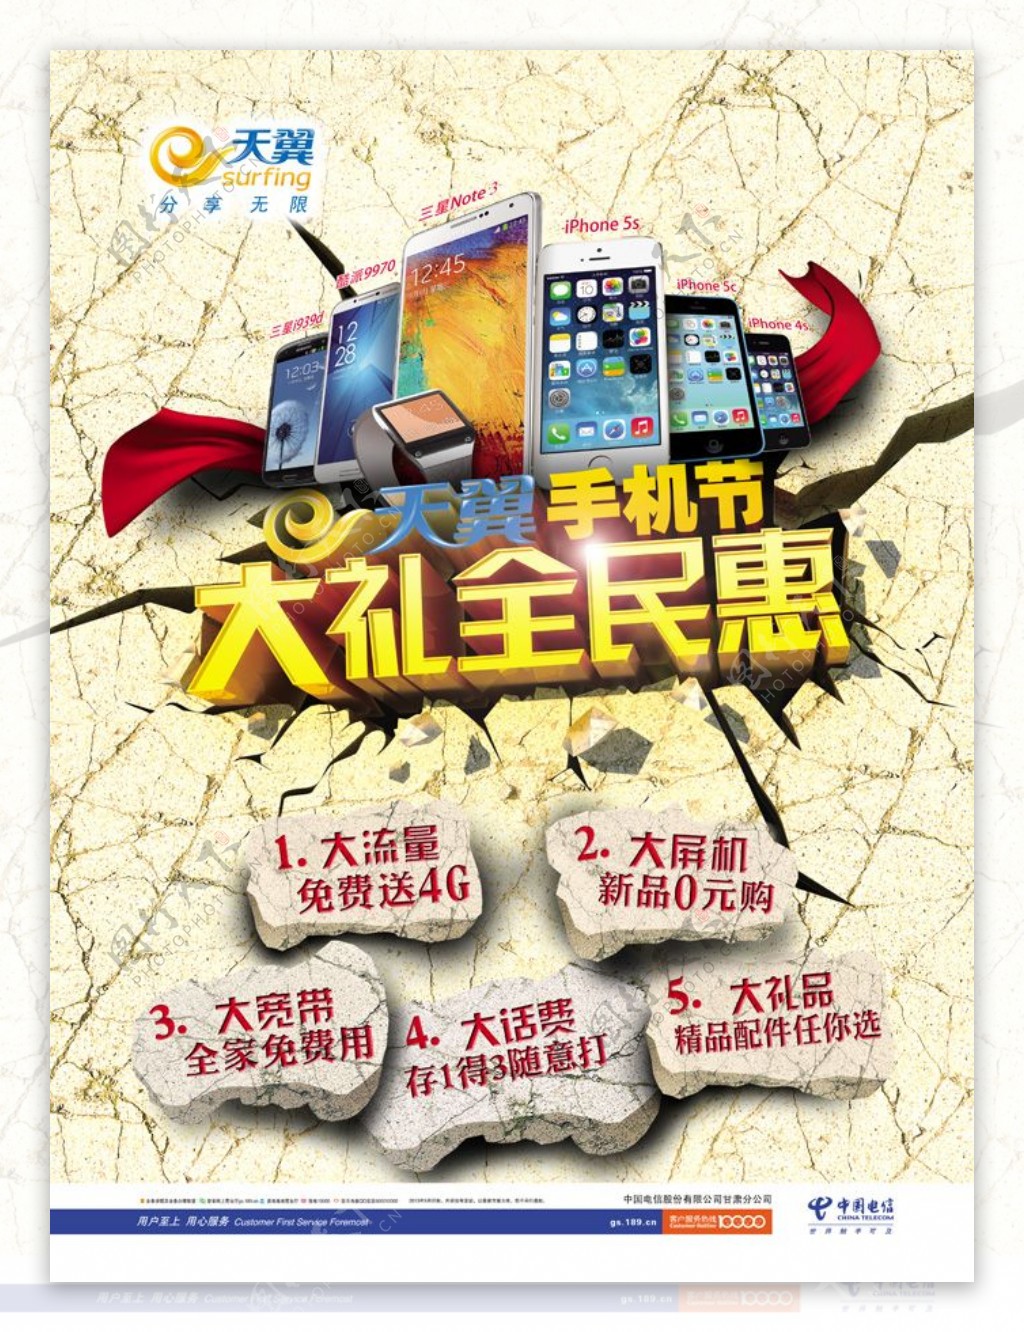 中国电信活动海报